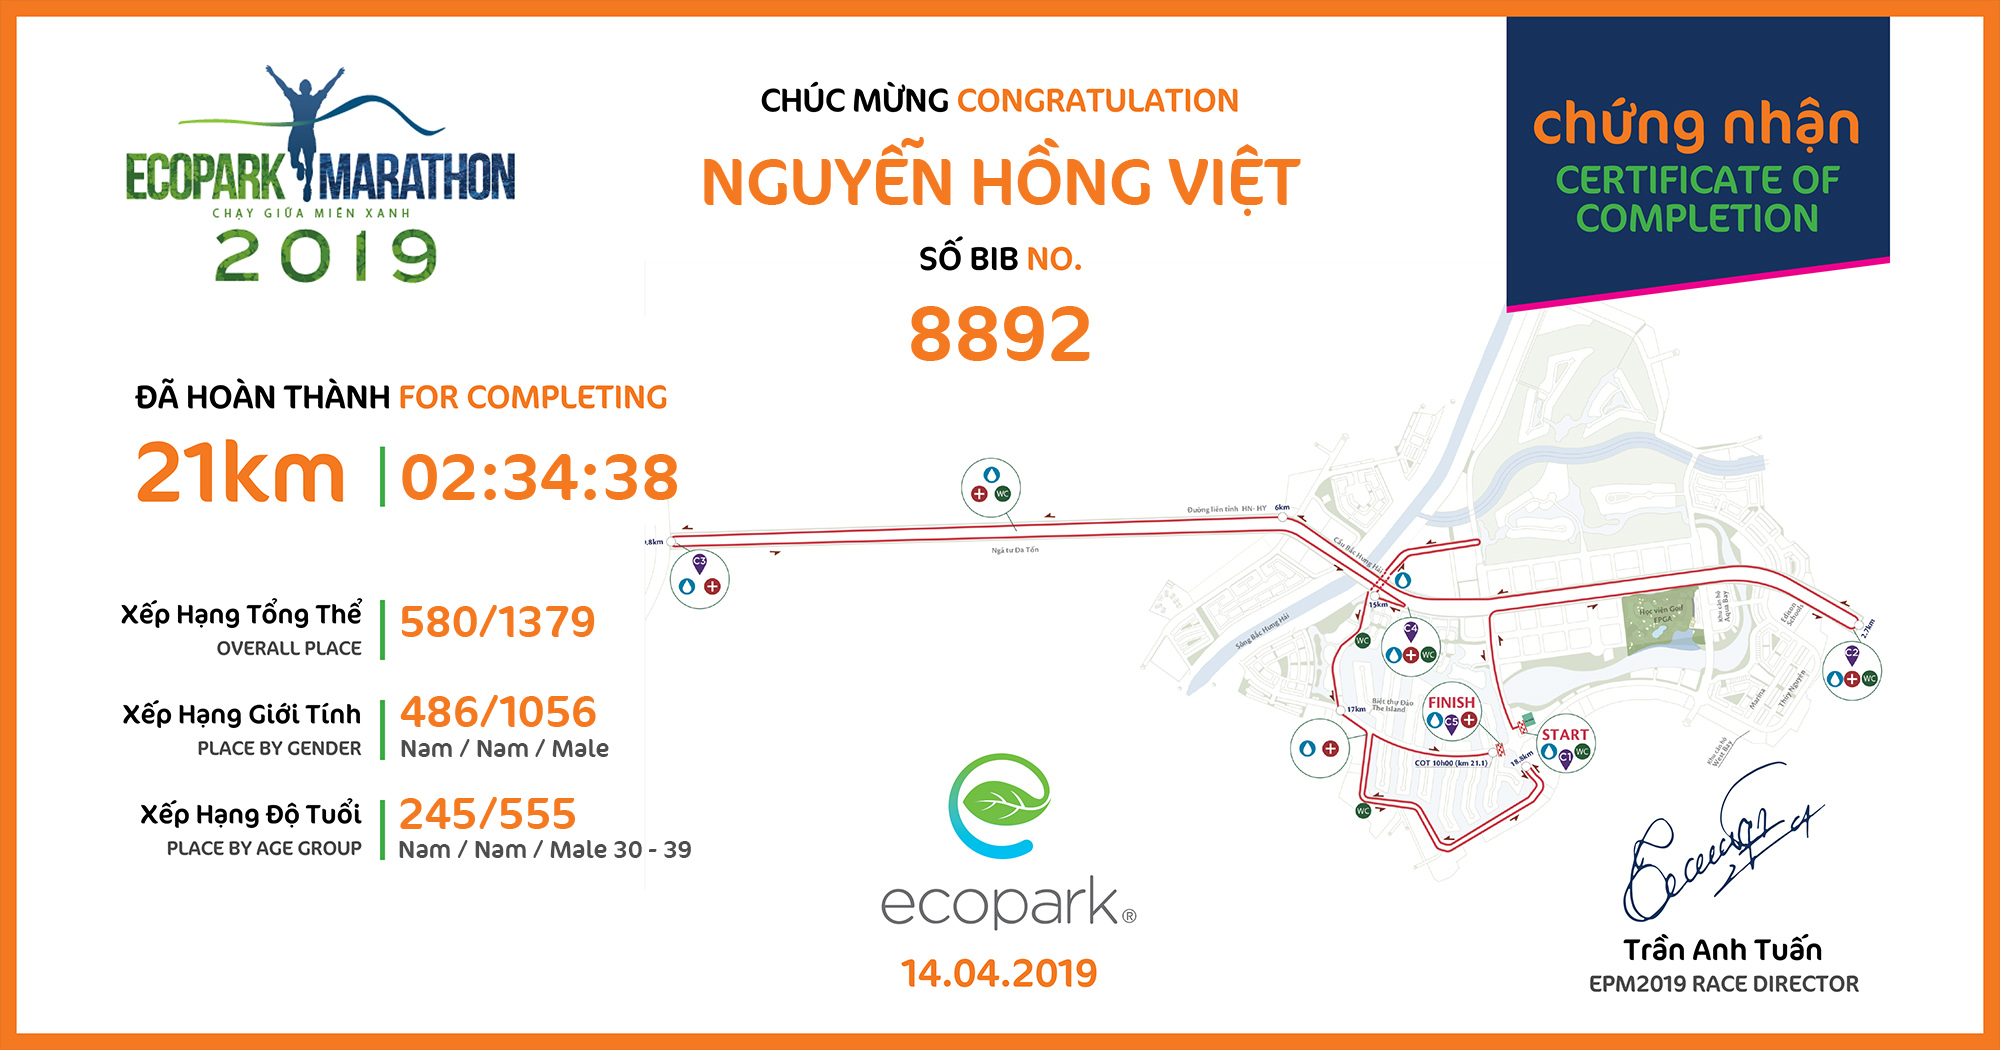 8892 - Nguyễn Hồng Việt